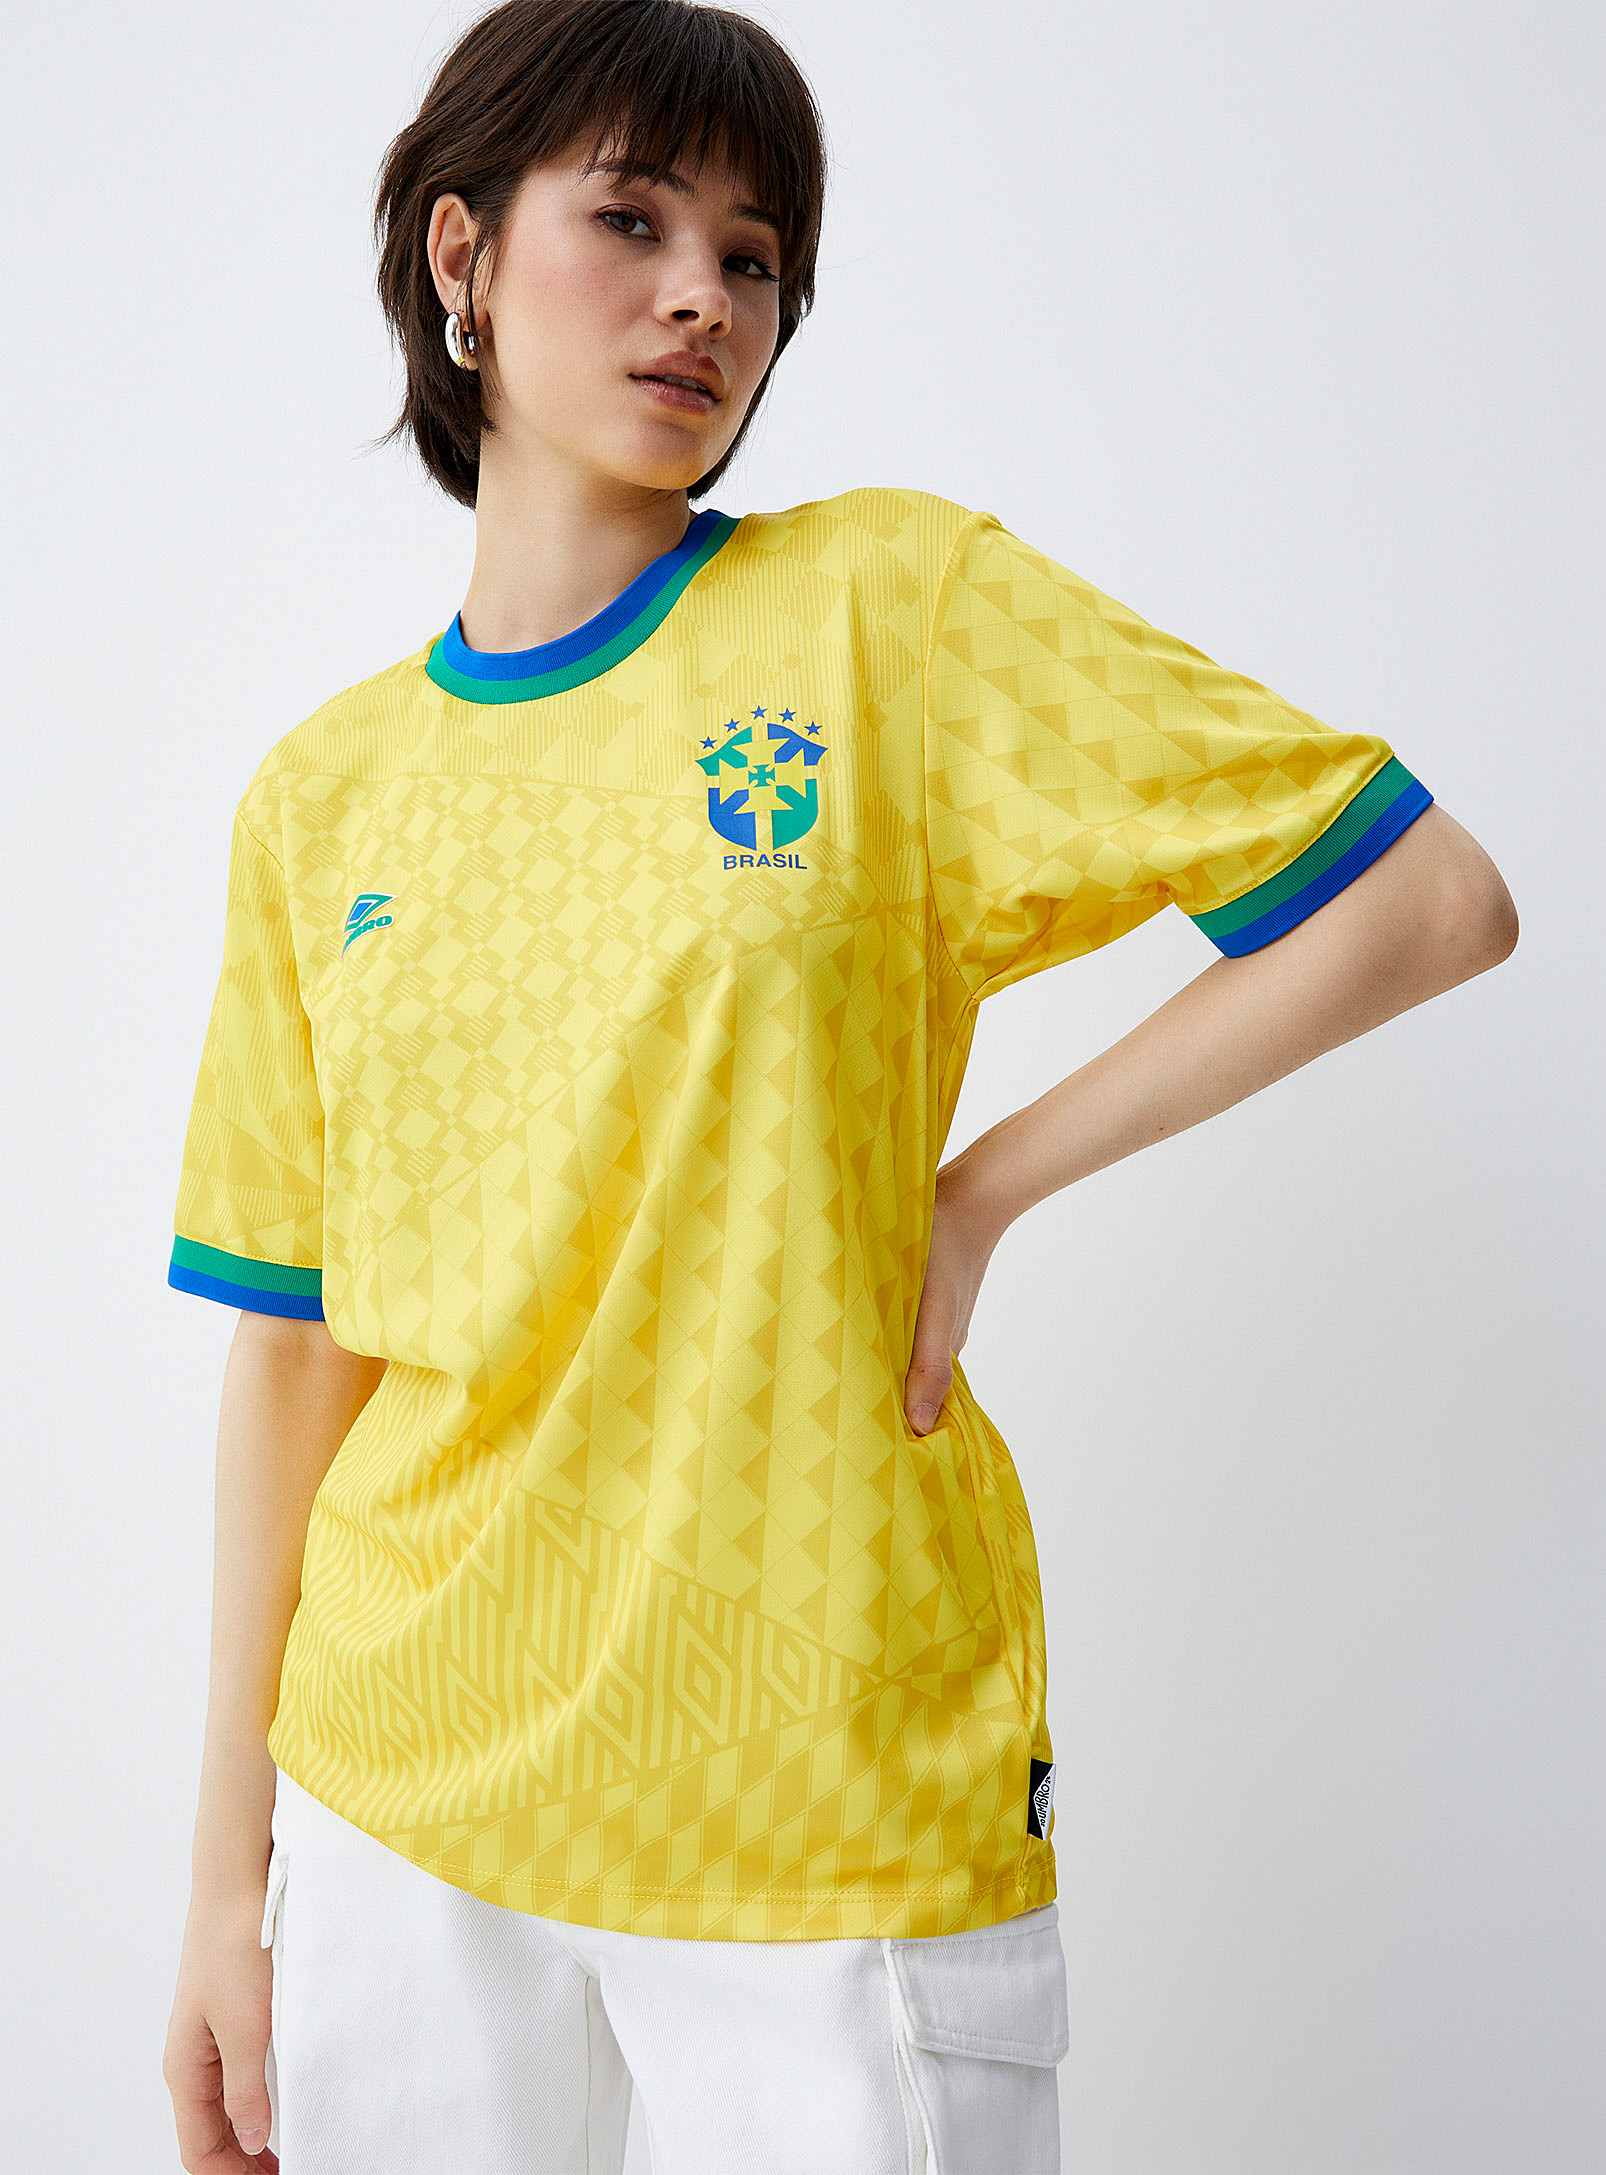 Umbro - Women's Brazil soccer Tee Shirt